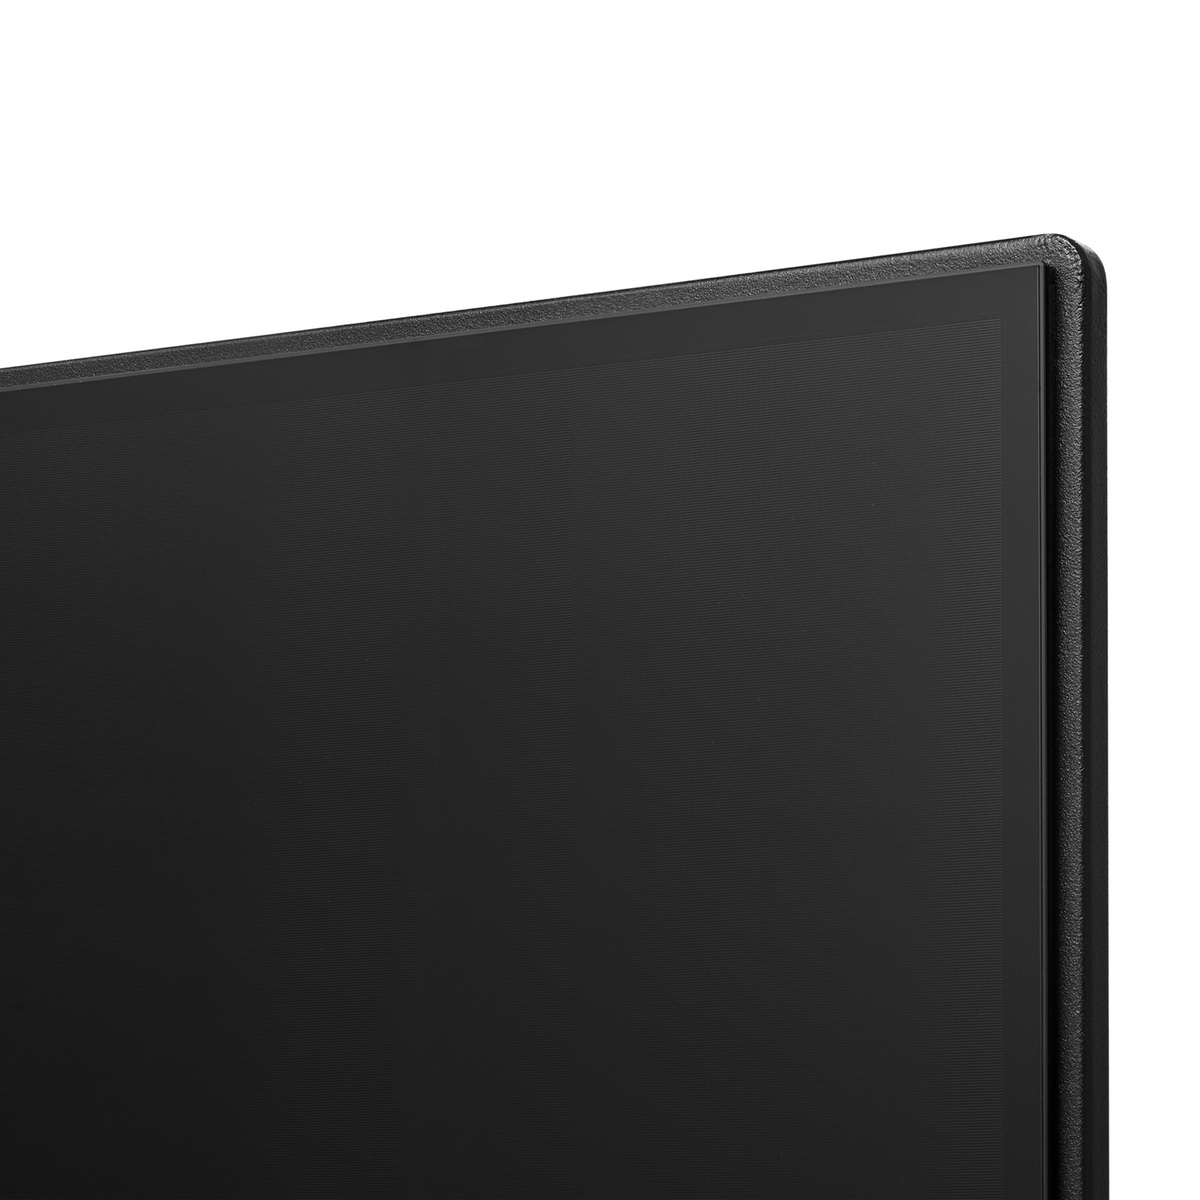 Hisense 70 inches 4K-UHD LED Smart TV, Black, 70A6EG